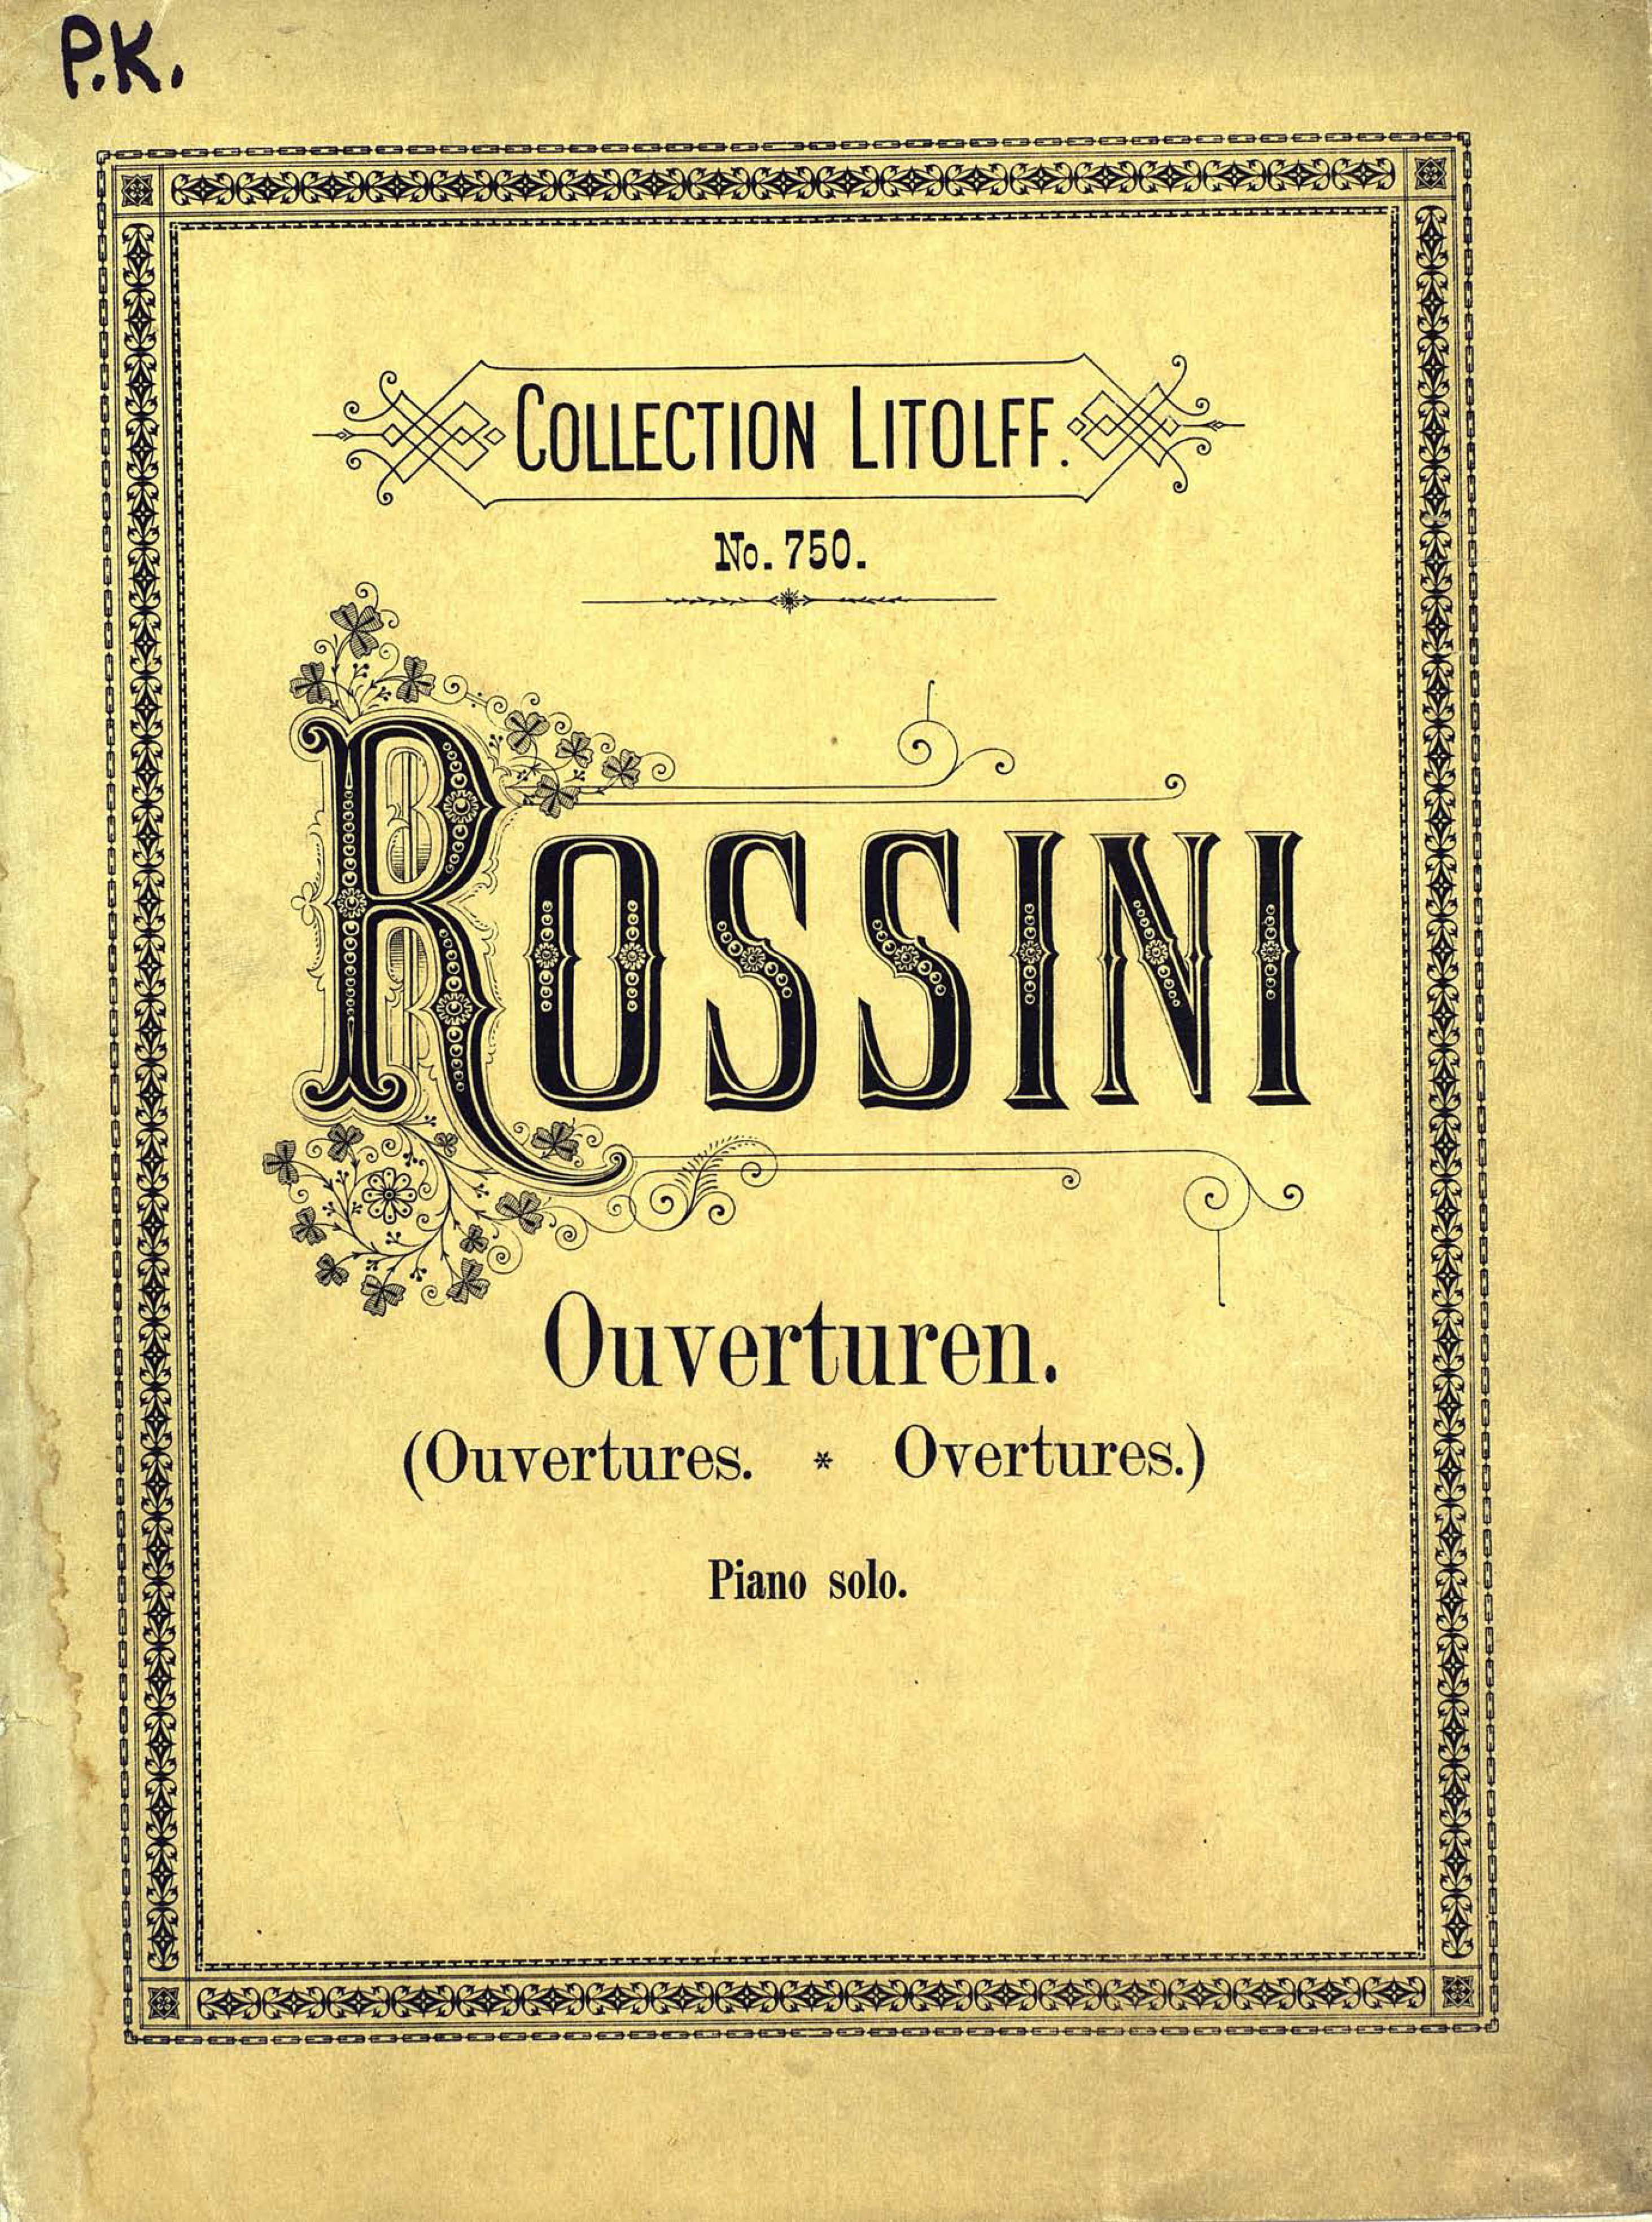 Ouvertures Choisies pour Piano a 2 ms. de G. Rossini